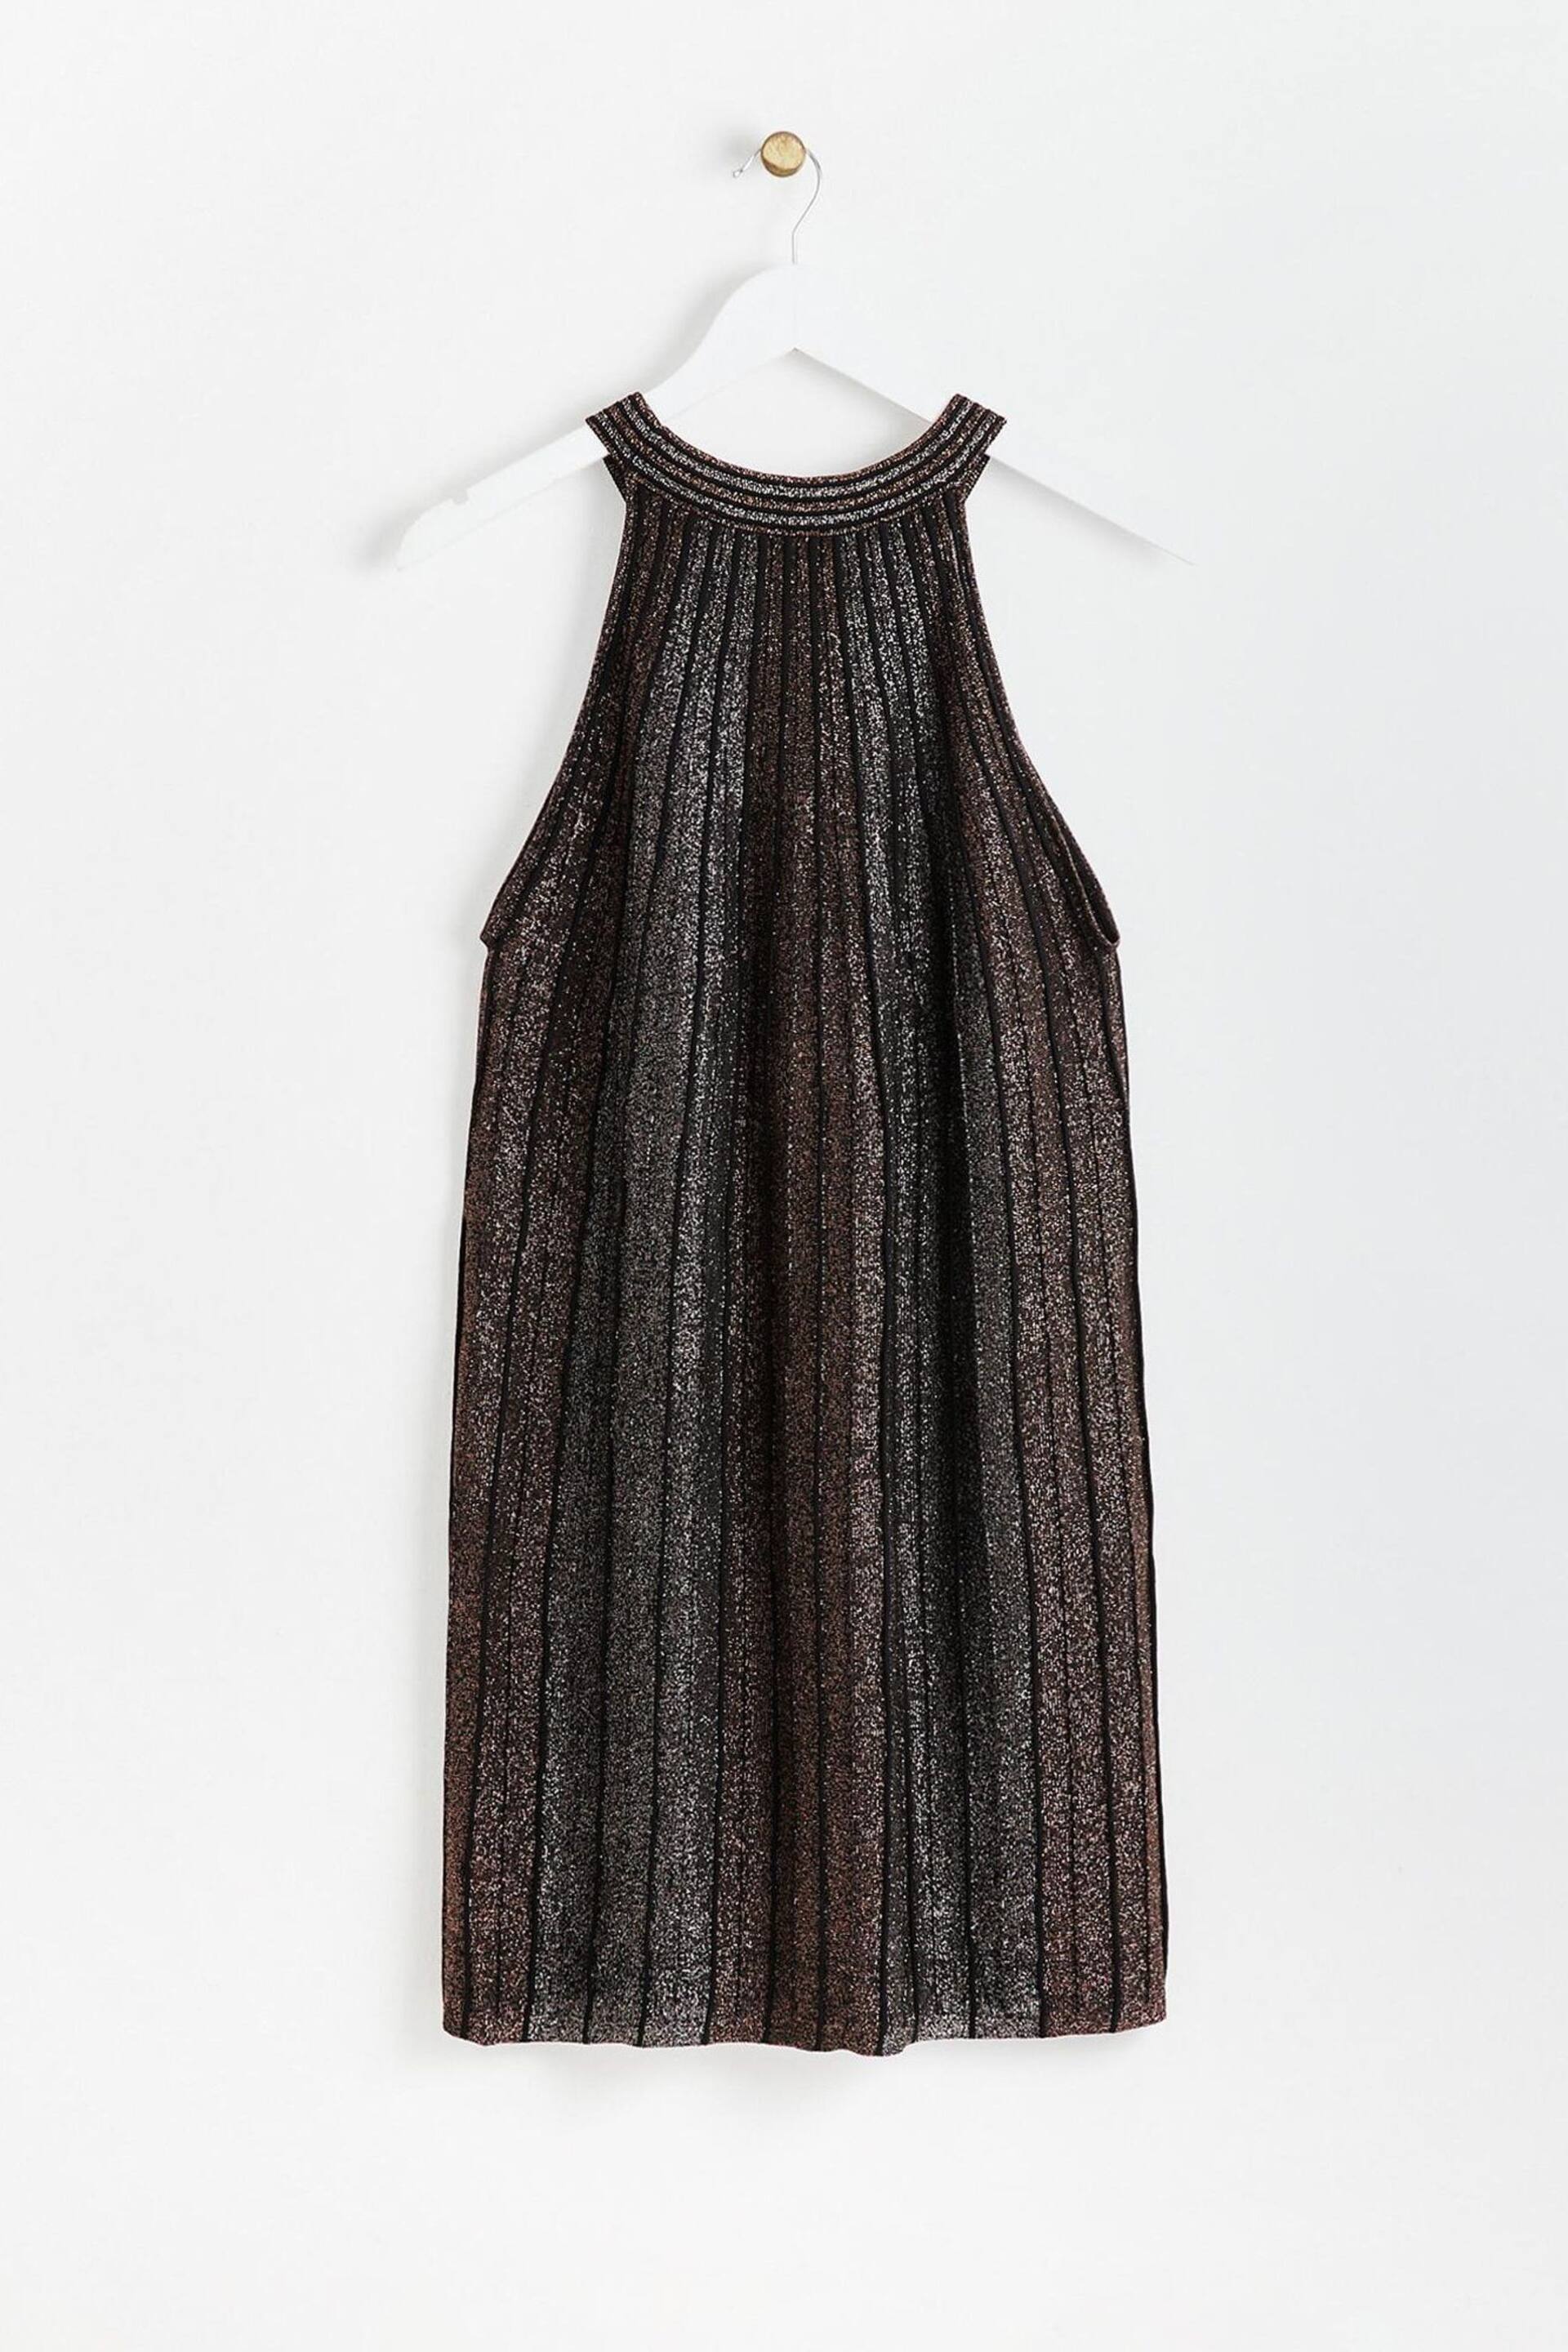 Oliver Bonas Black Sparkle Stripe Copper Halter Neck Shift Dress - Image 5 of 8